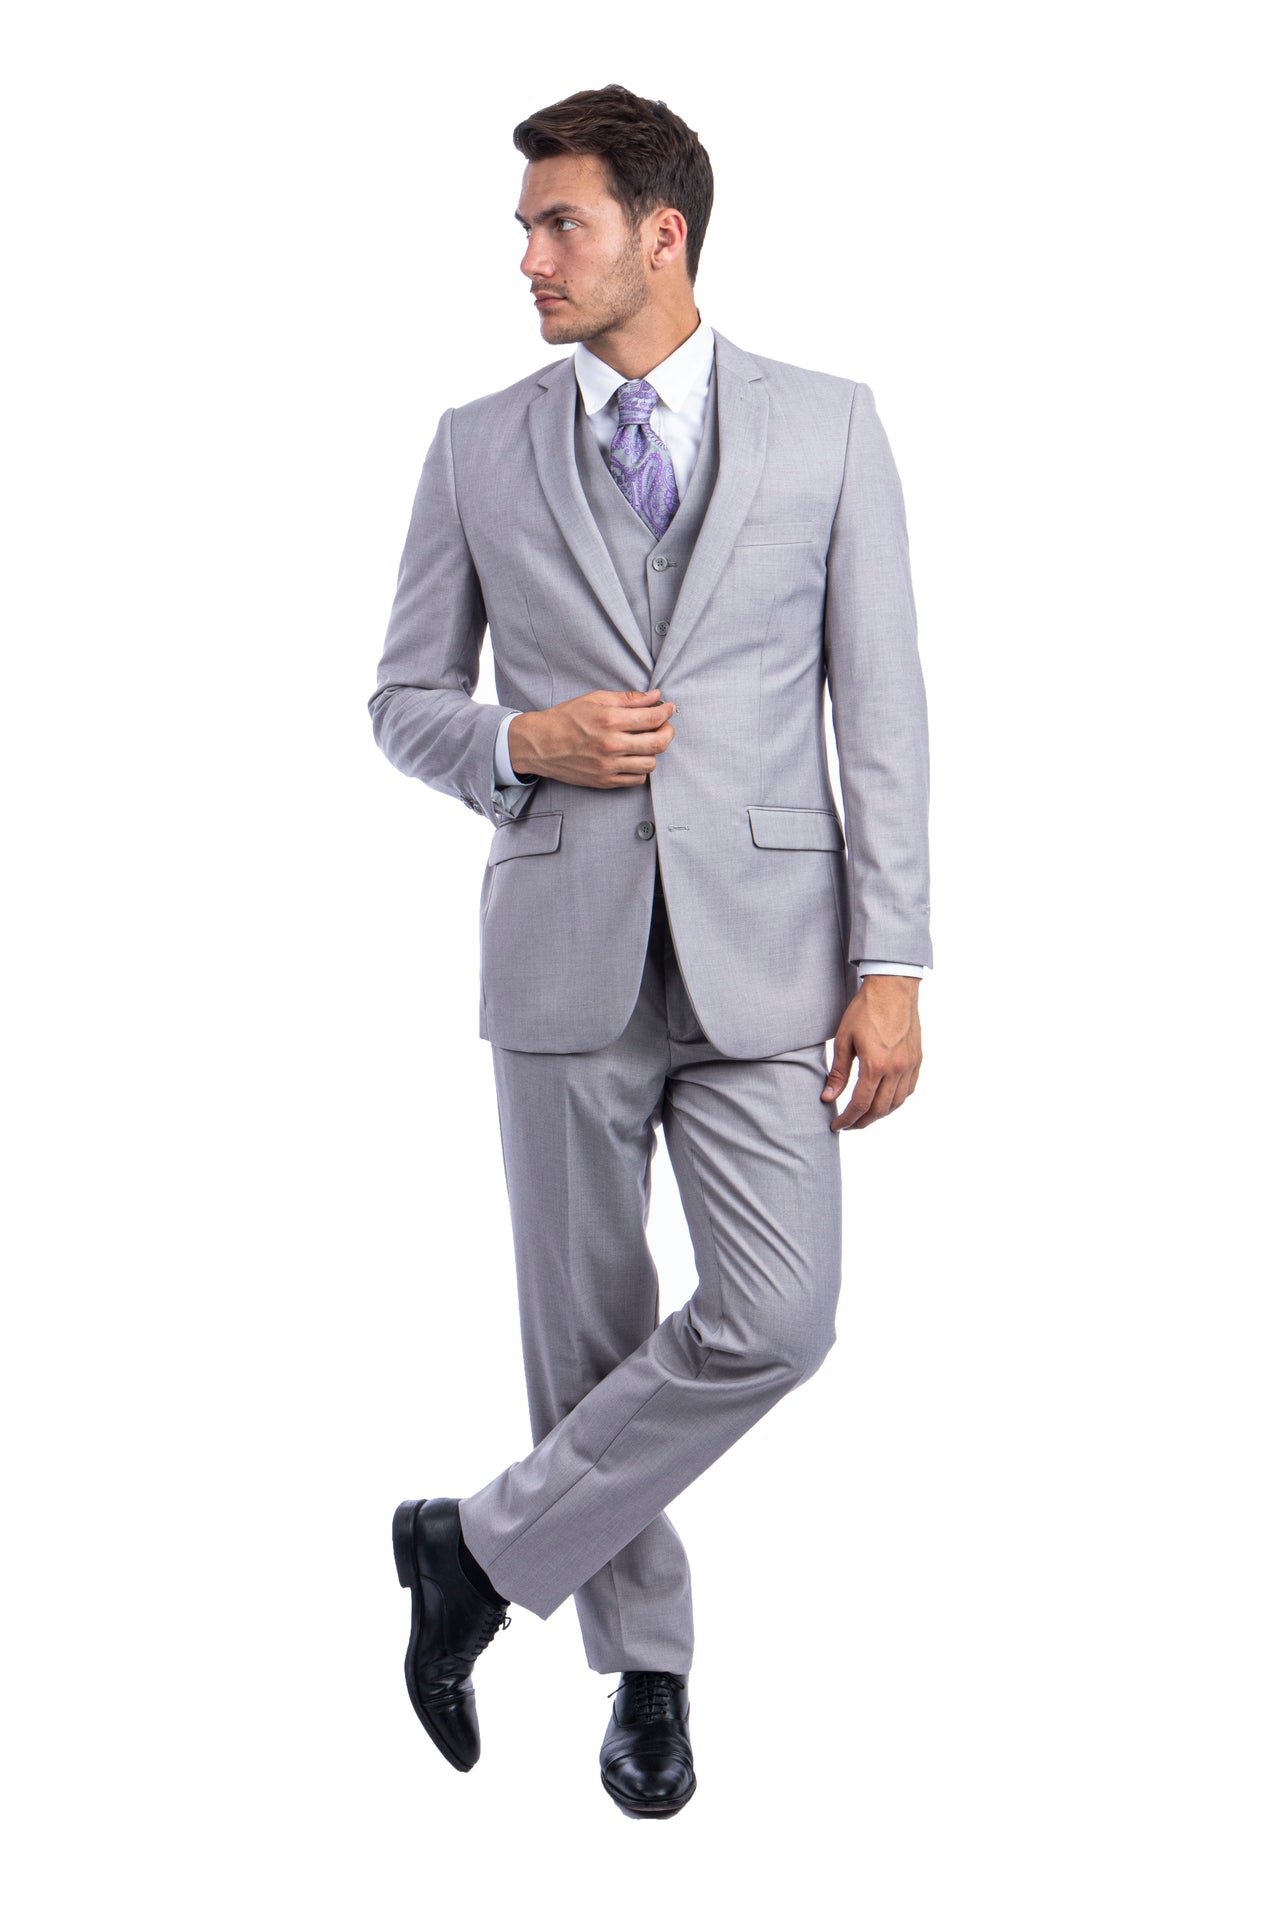 Lt.Grey Suits 3 PC, Hybrid Fit - Hattitude